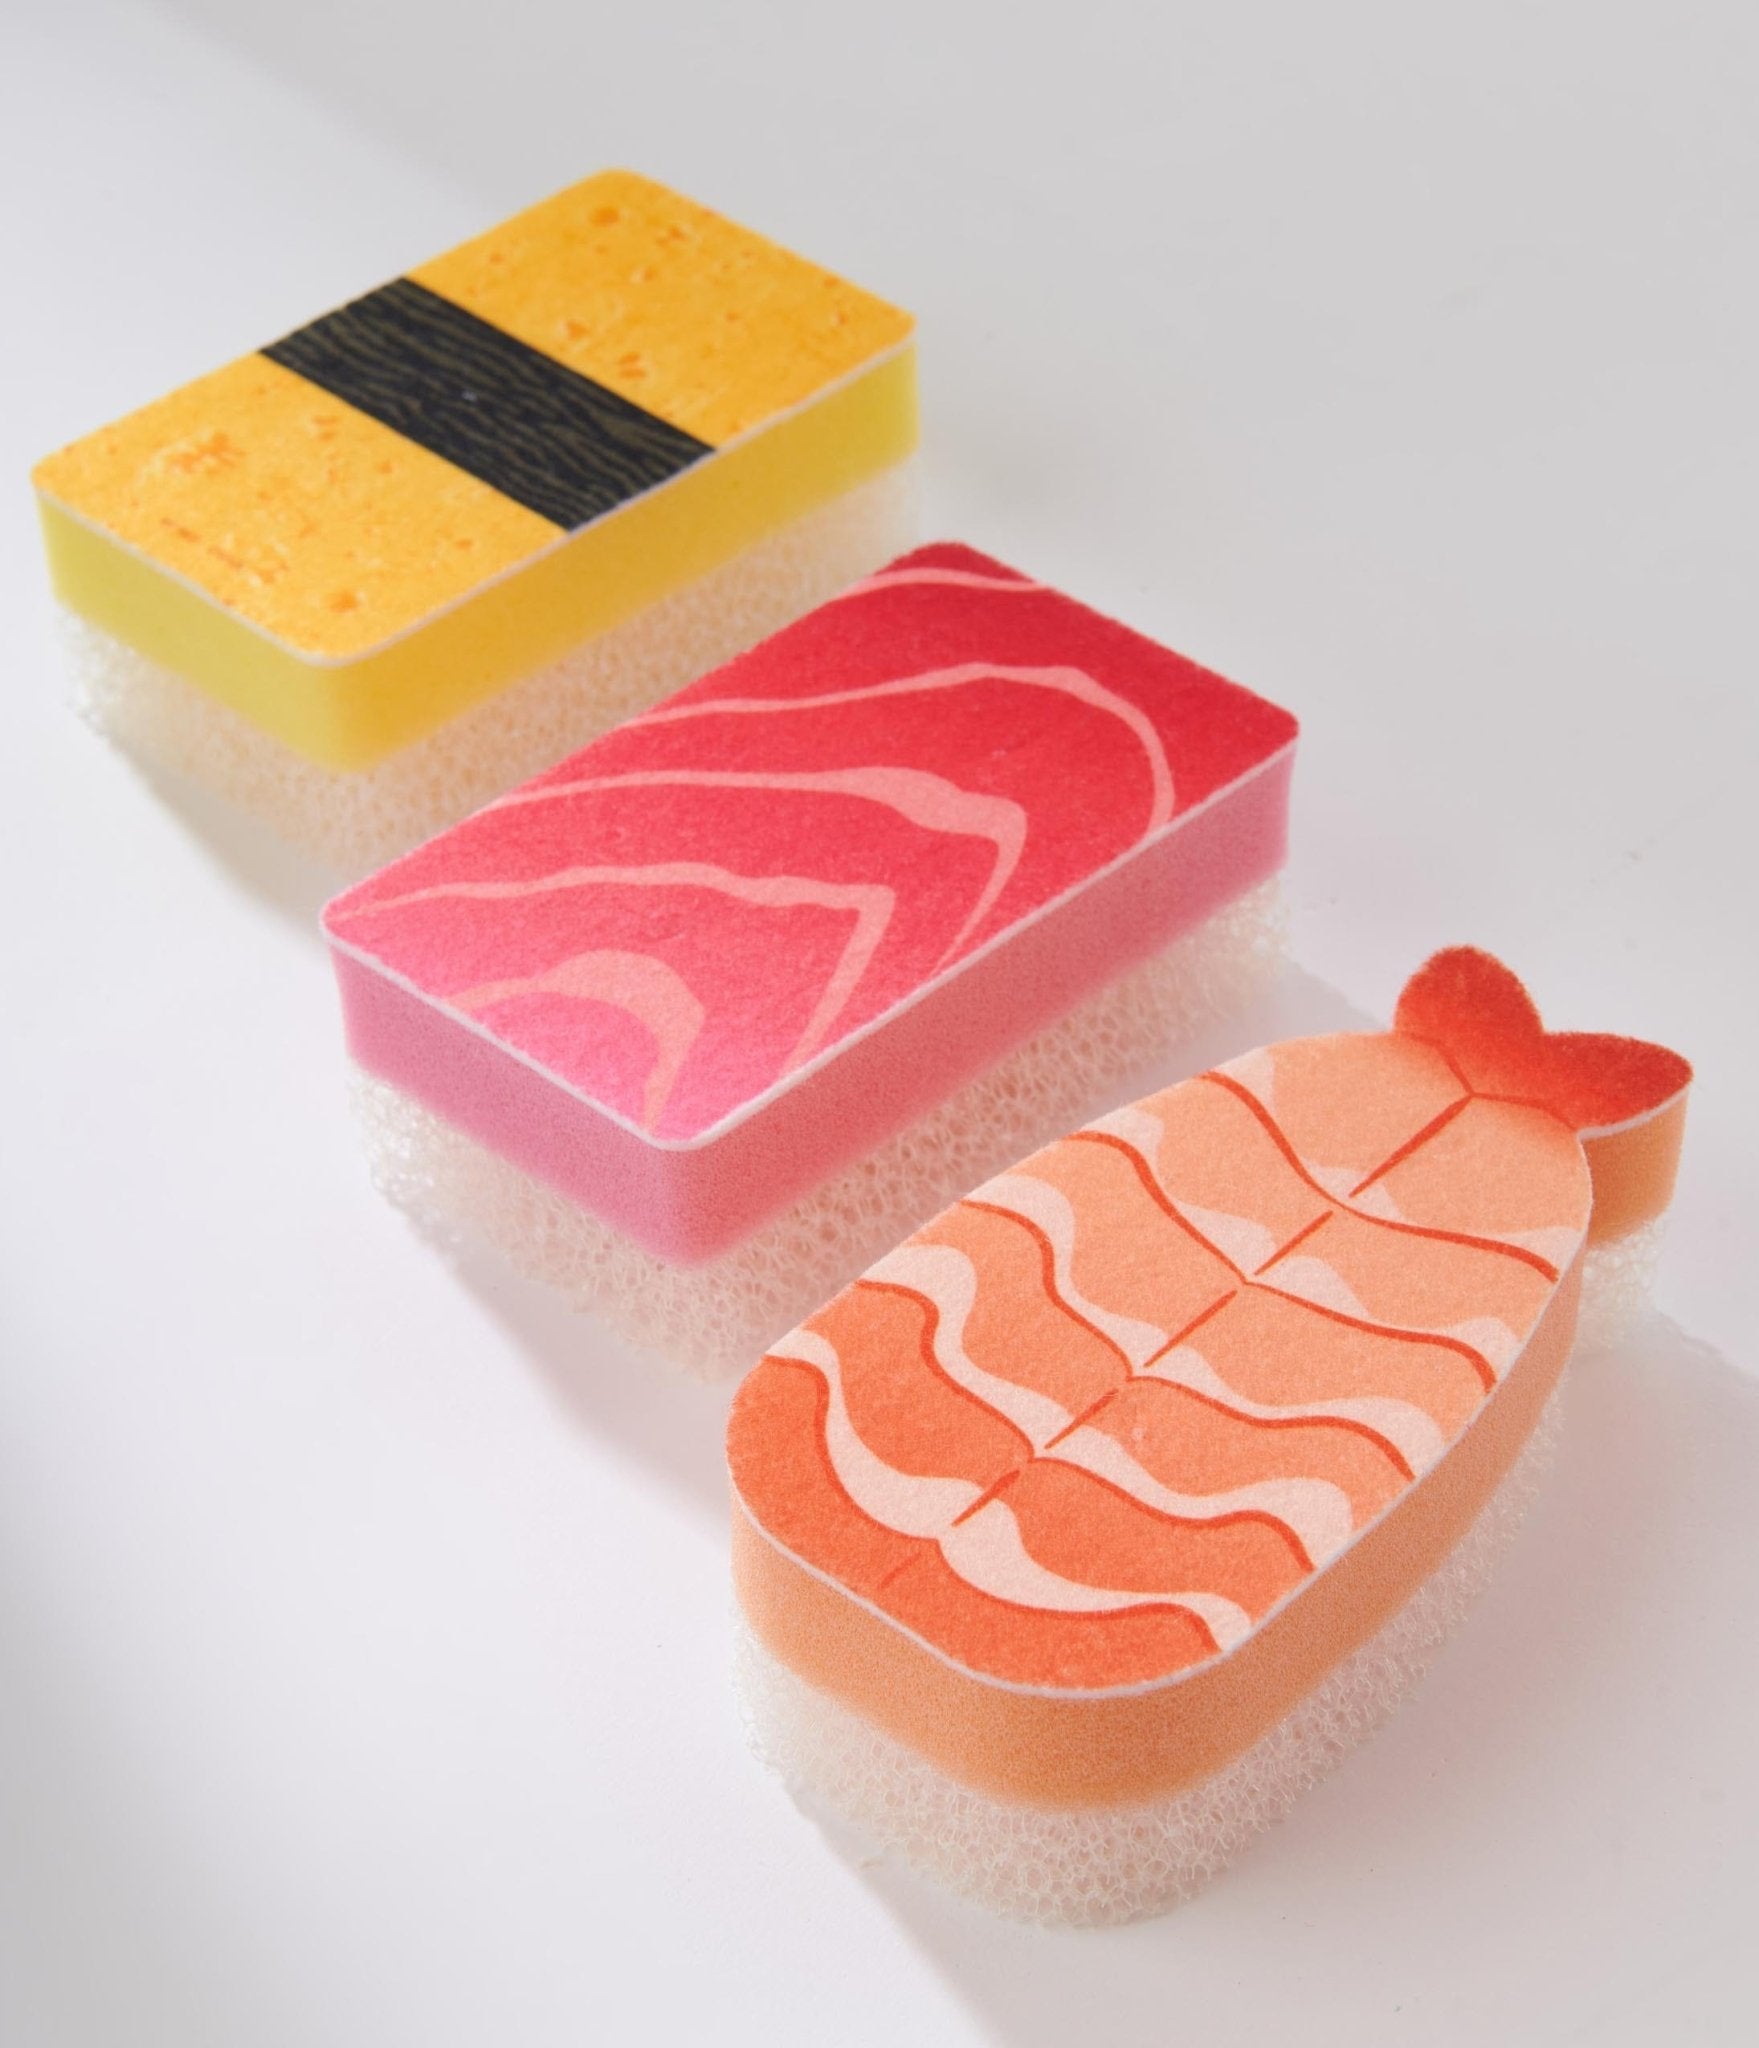 Wholesale Imitation Sushi Gift Box Needle Felting Kit 